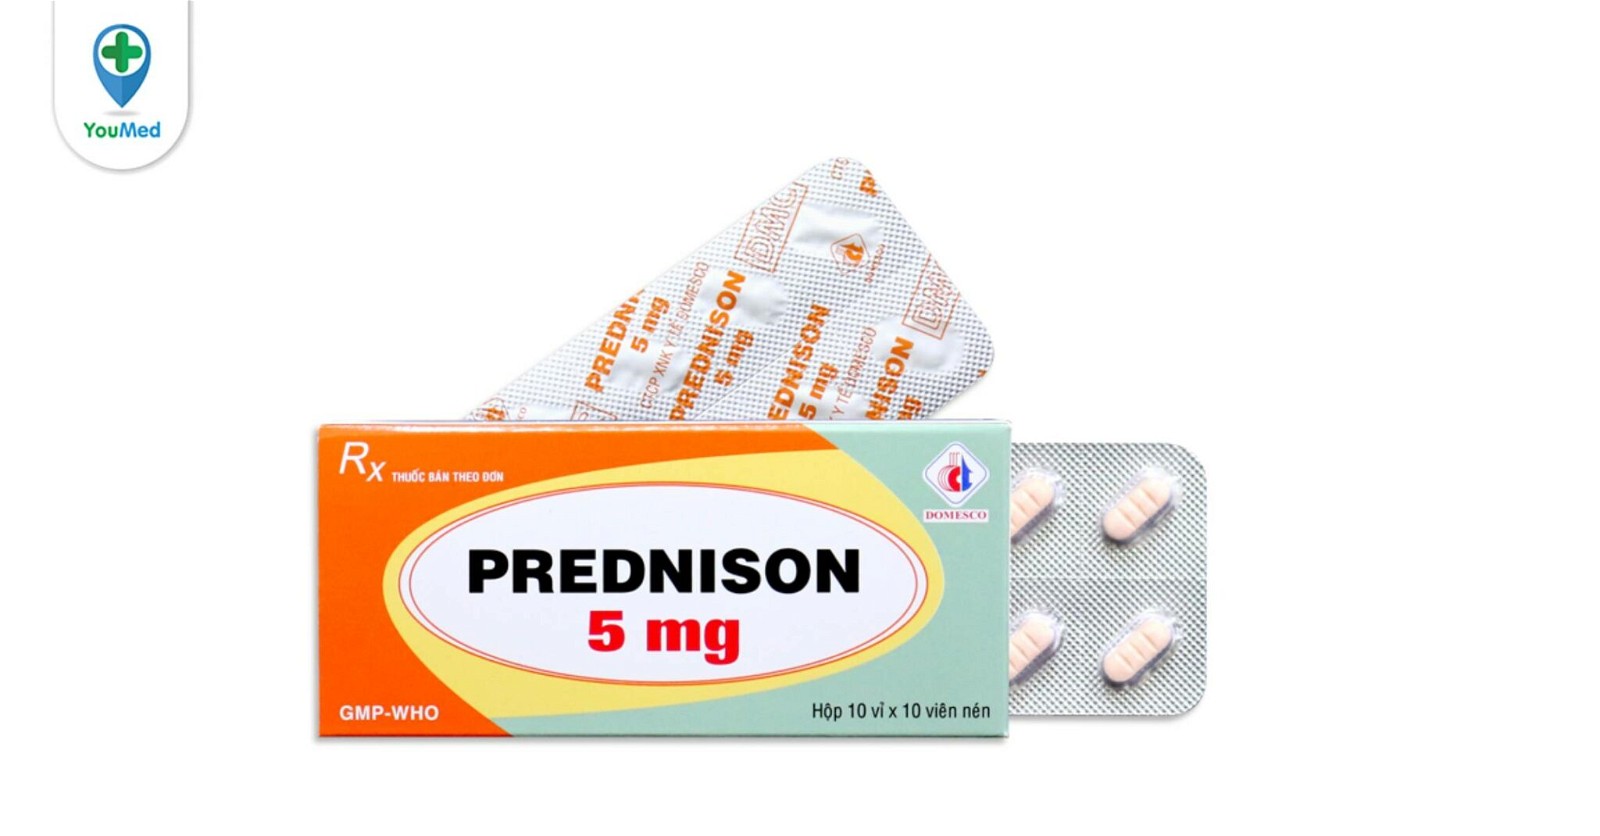 Prednison 5mg có tác dụng chống viêm và ức chế miễn dịch như thế nào?